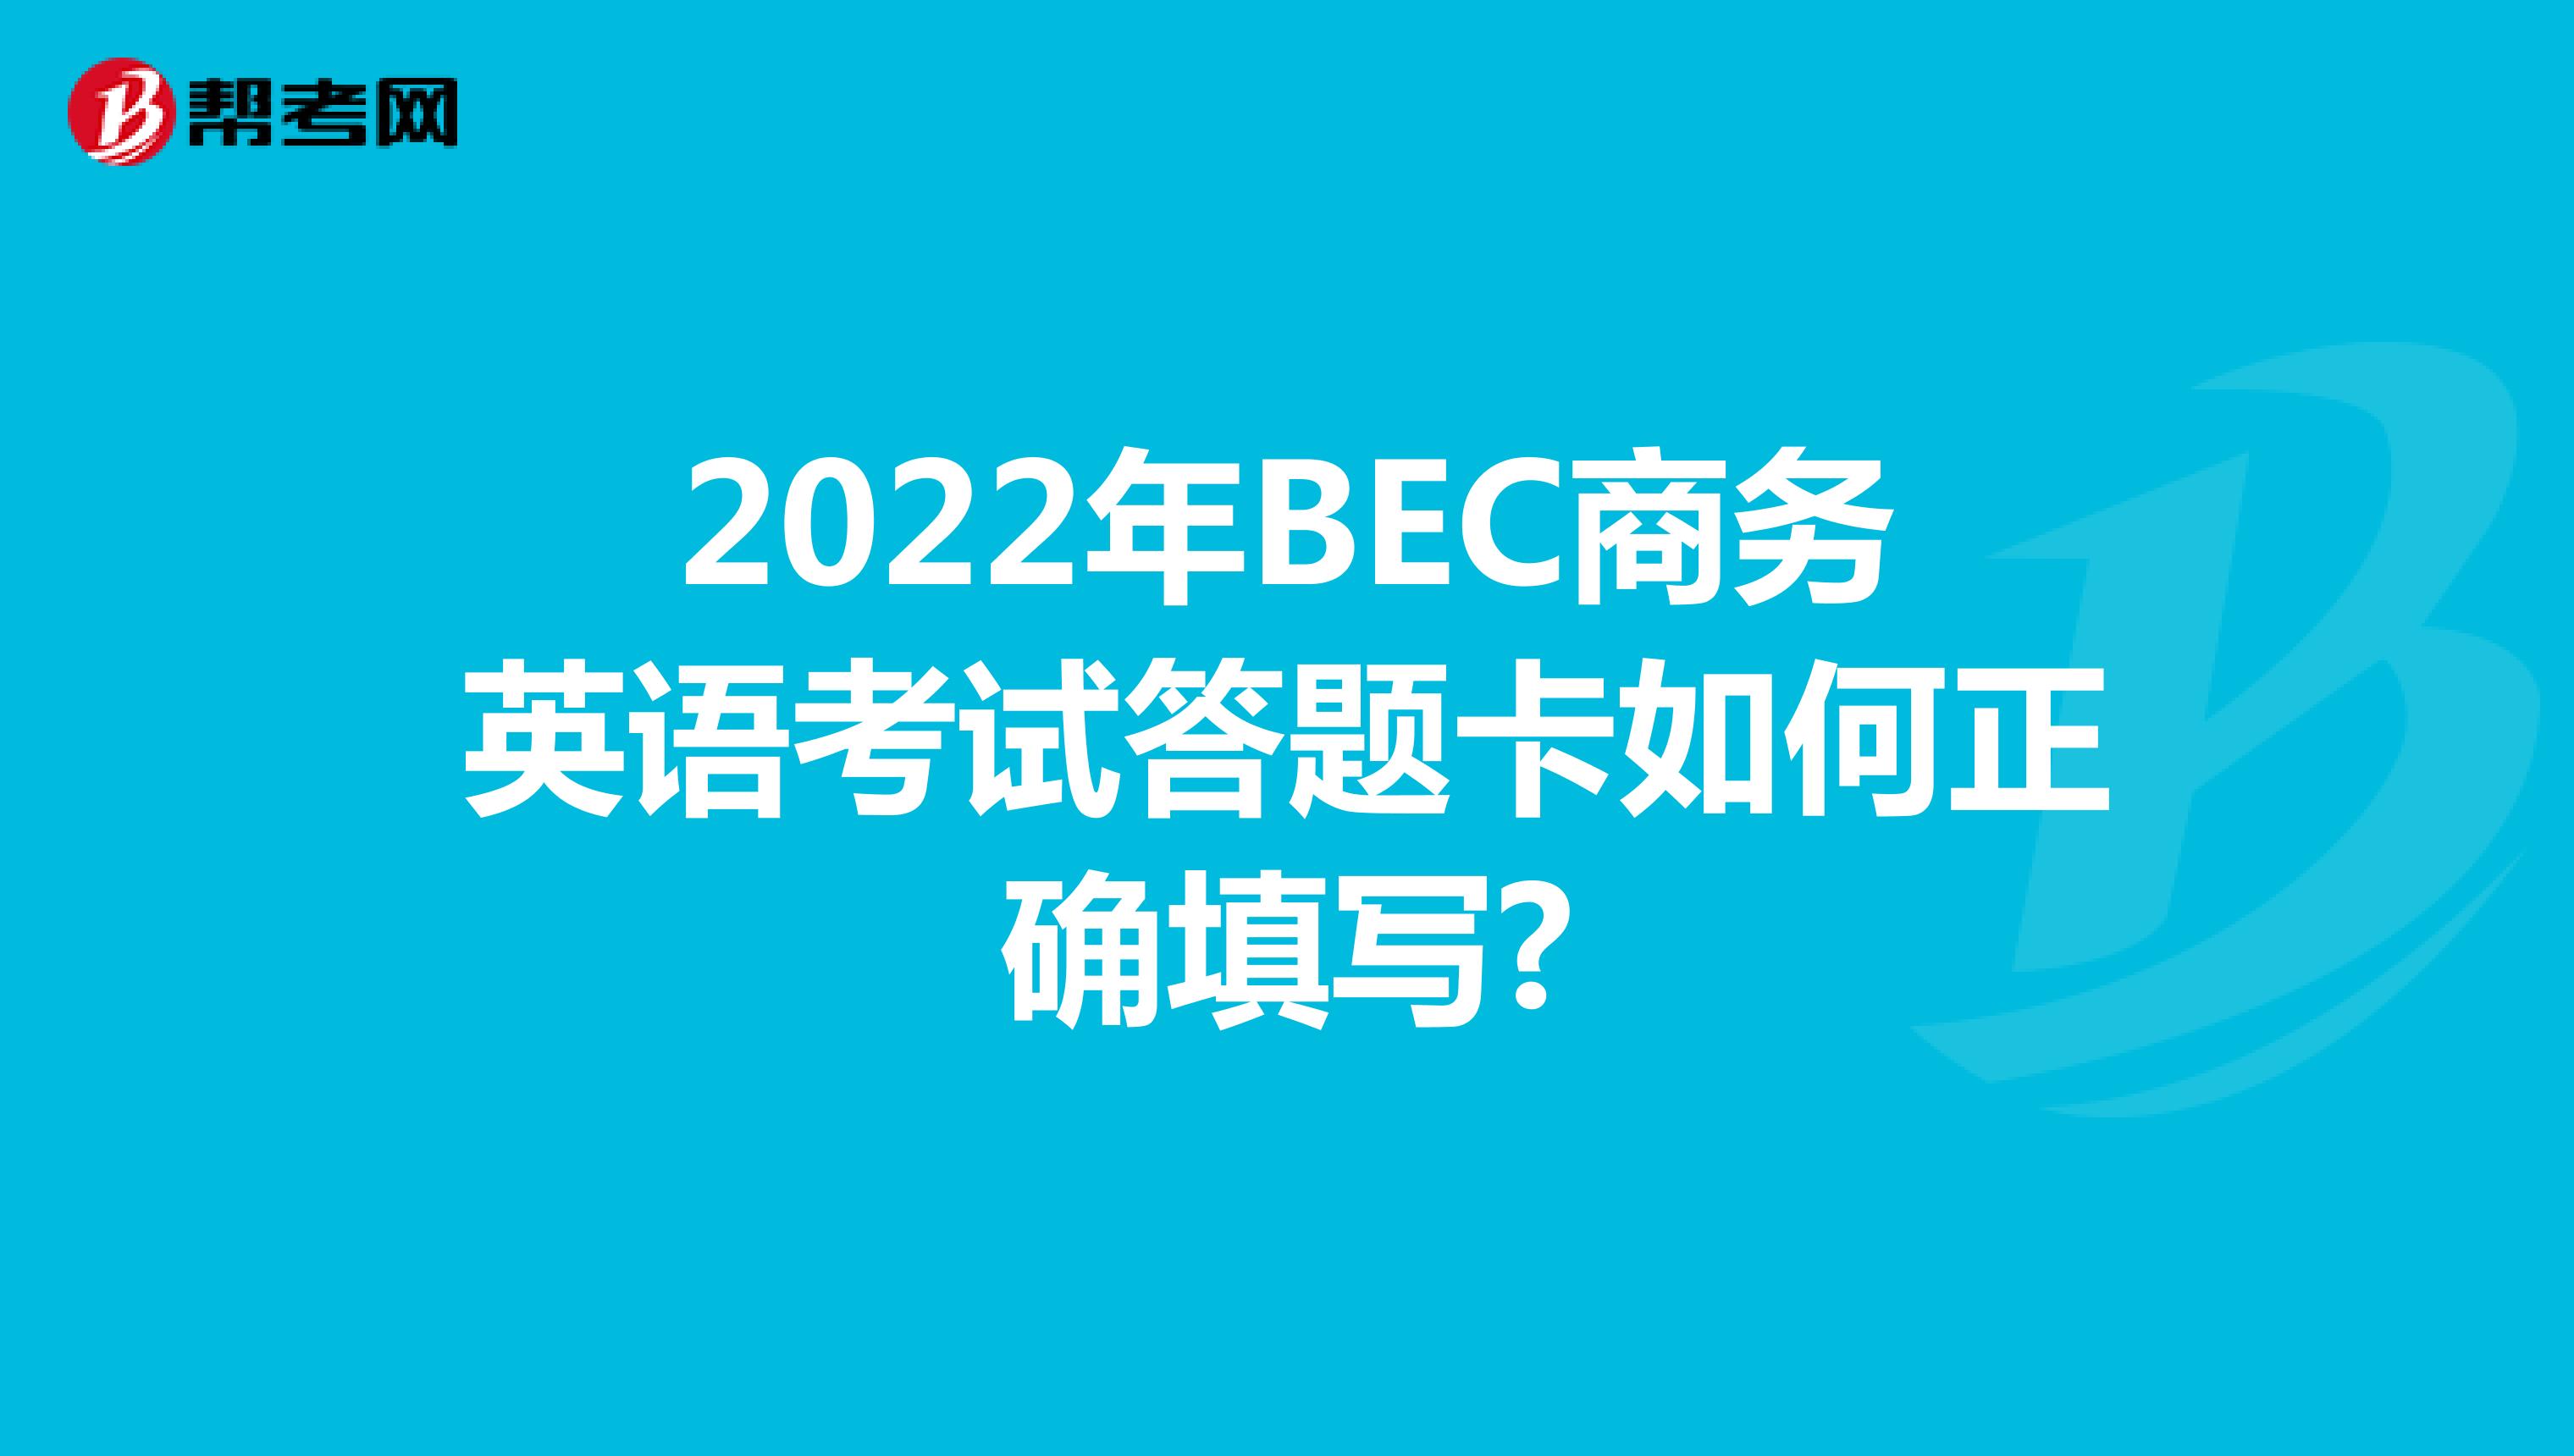 2022年BEC商务英语考试答题卡如何正确填写?